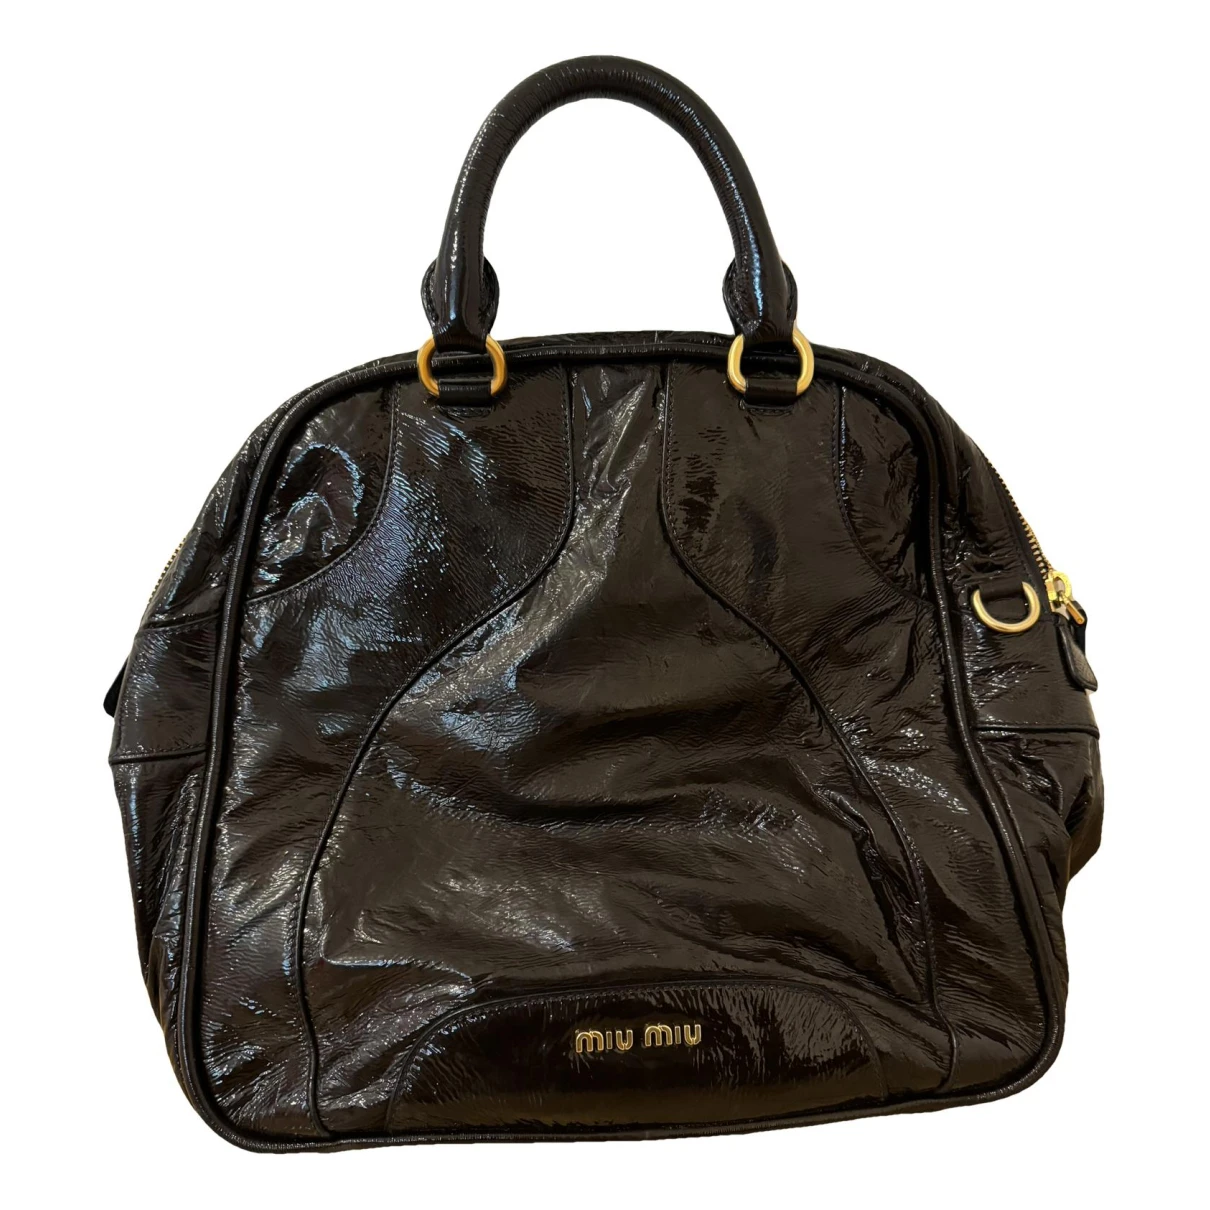 Pre-owned Miu Miu Patent Leather Handbag In Brown